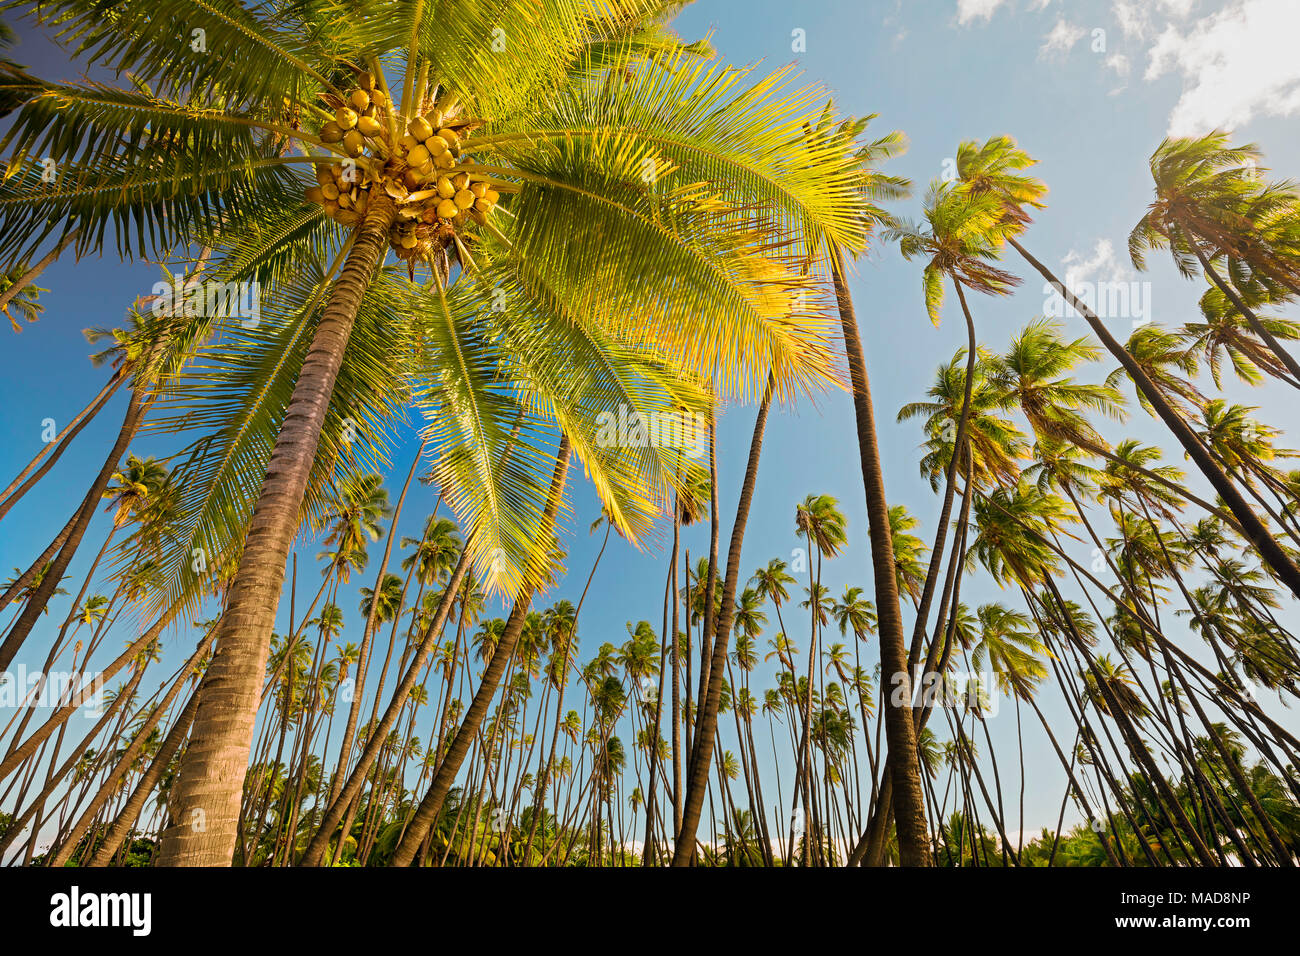 Kapuaiwa Coconut Beach Park, ist eine alte hawaiianische Coconut Grove in den 1860er Jahren während der Regierungszeit von König Kamehameha V. mit Hunderten von Kokospalmen bepflanzt Stockfoto